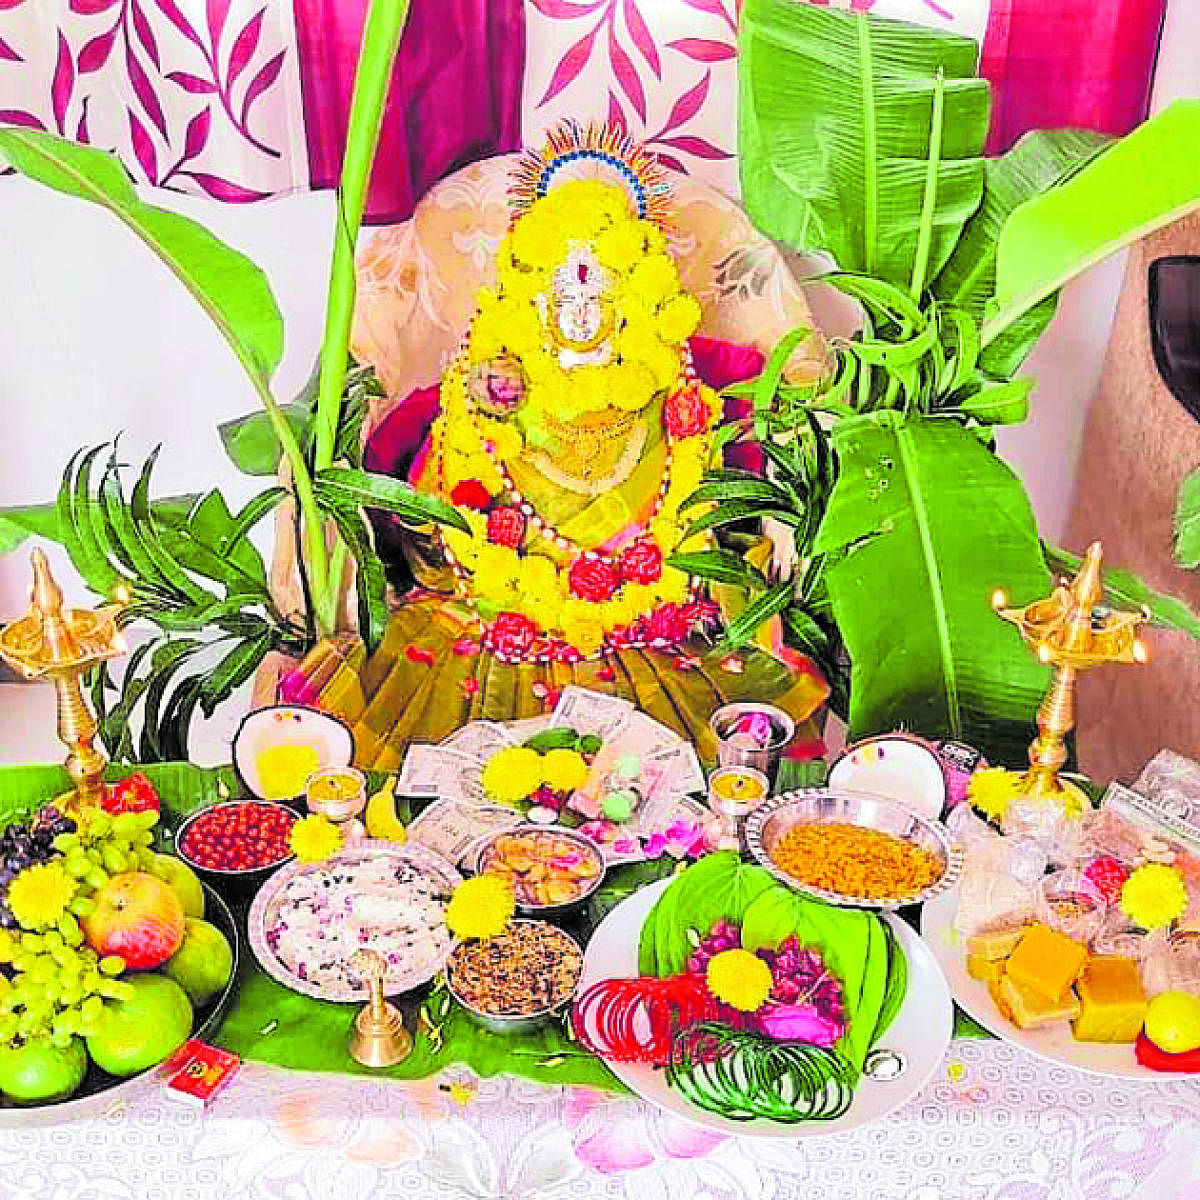 Varamahalakshmi festival celebrated in Kodagu